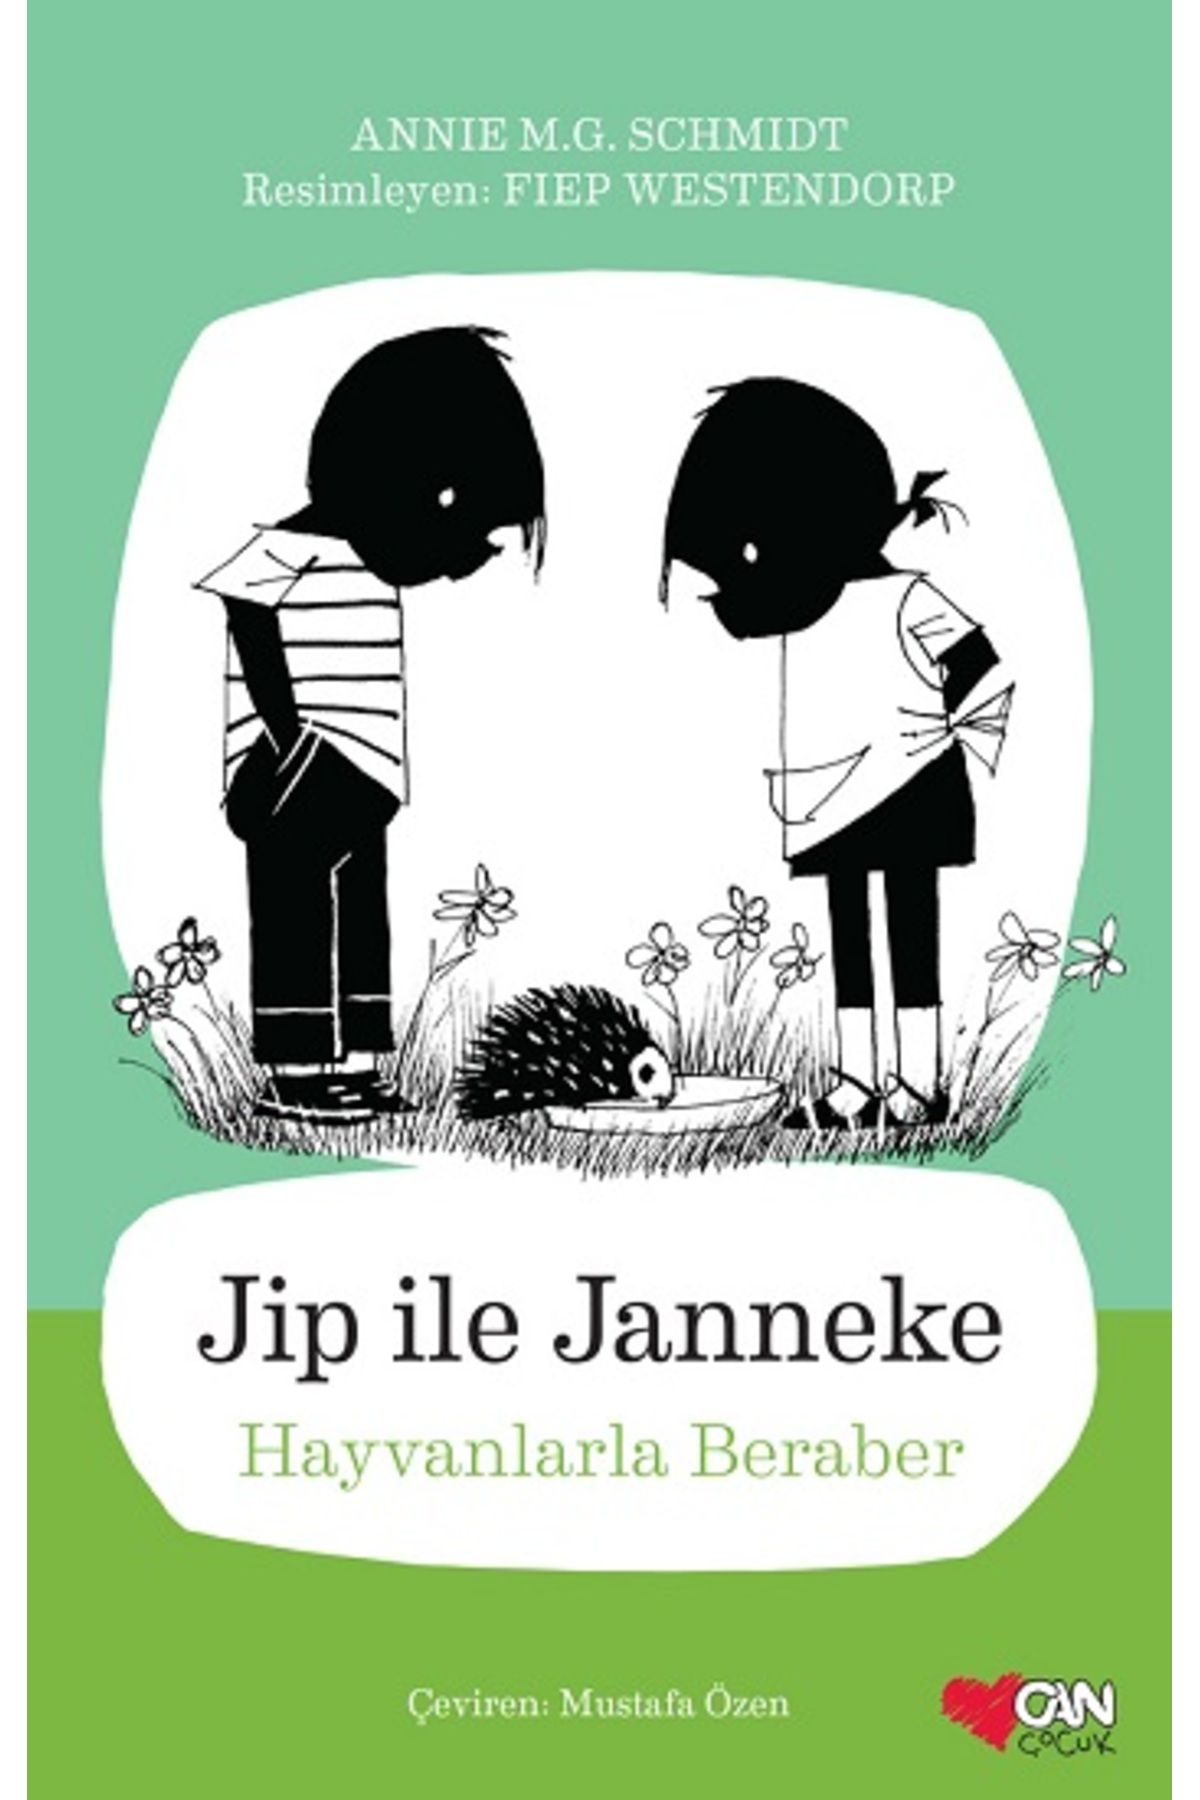 Can Çocuk Yayınları Jip ile Janneke: Hayvanlarla Beraber